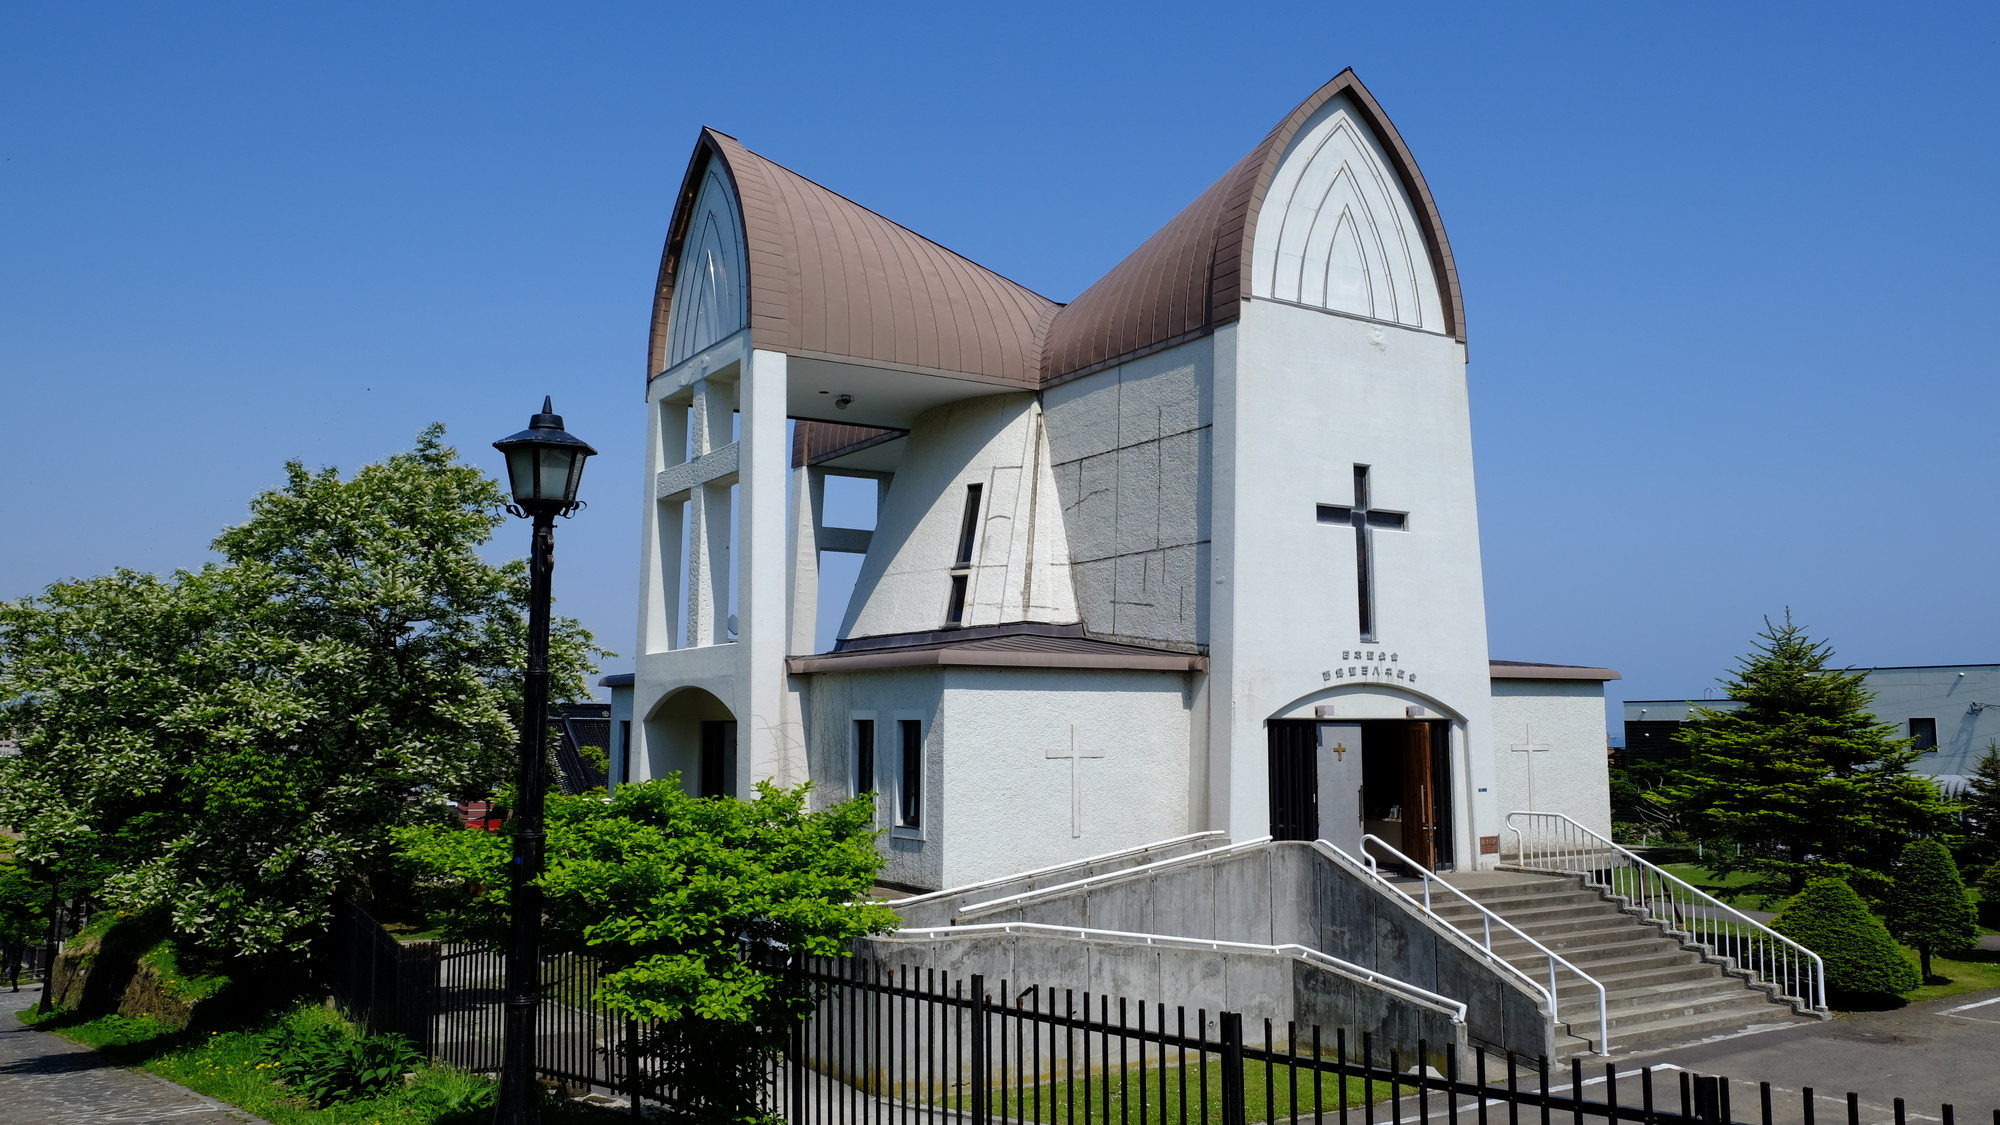 函館聖ヨハネ教会(茶色の十字形をした屋根が印象的、元町の有名な教会のひとつ)